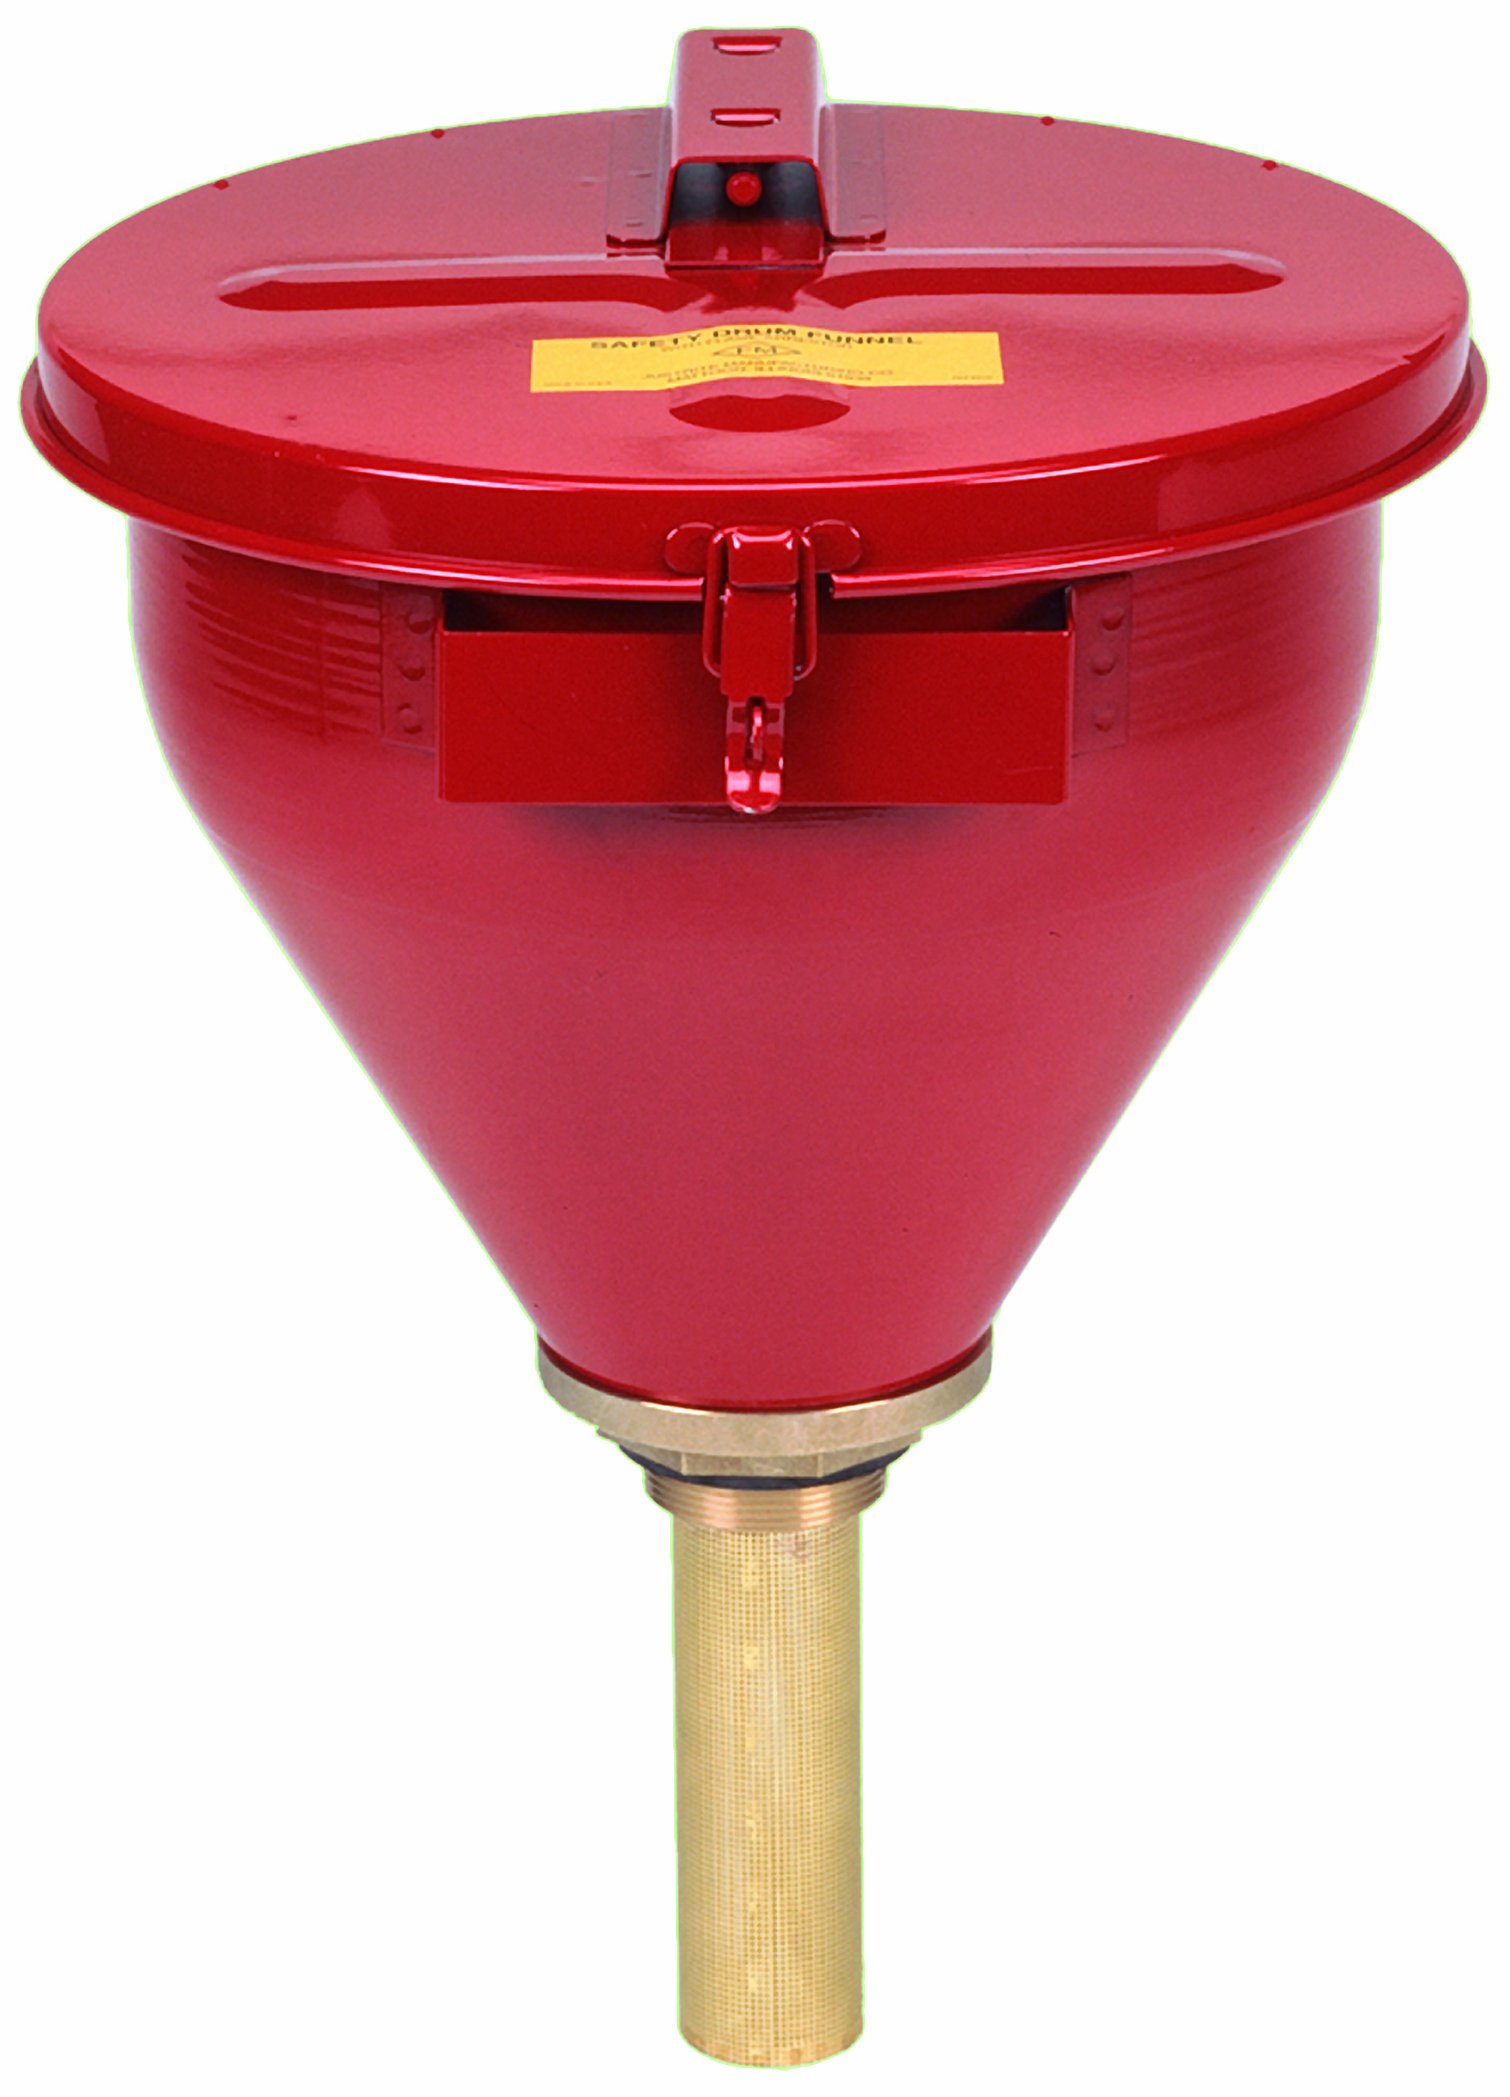 Justrite Embudo de tambor de seguridad grande de acero galvanizado rojo de 2.6 galones con tapa de cierre automático y parallamas de 6' (para materiales inflamables) (08207)